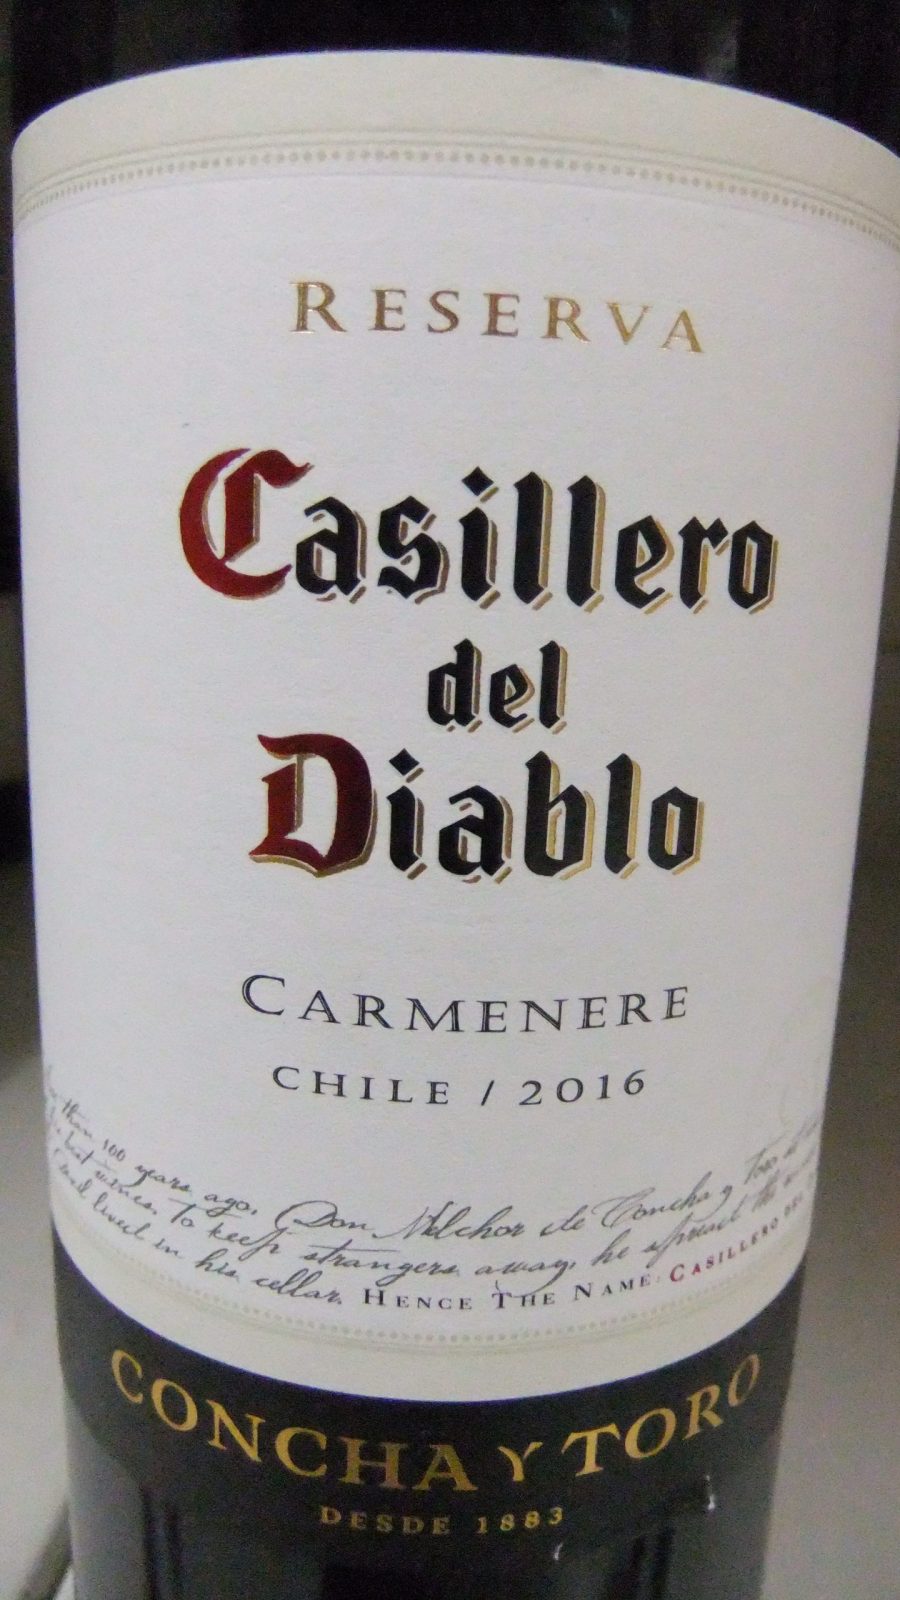 Casillero del Diablo Carmenere 2016